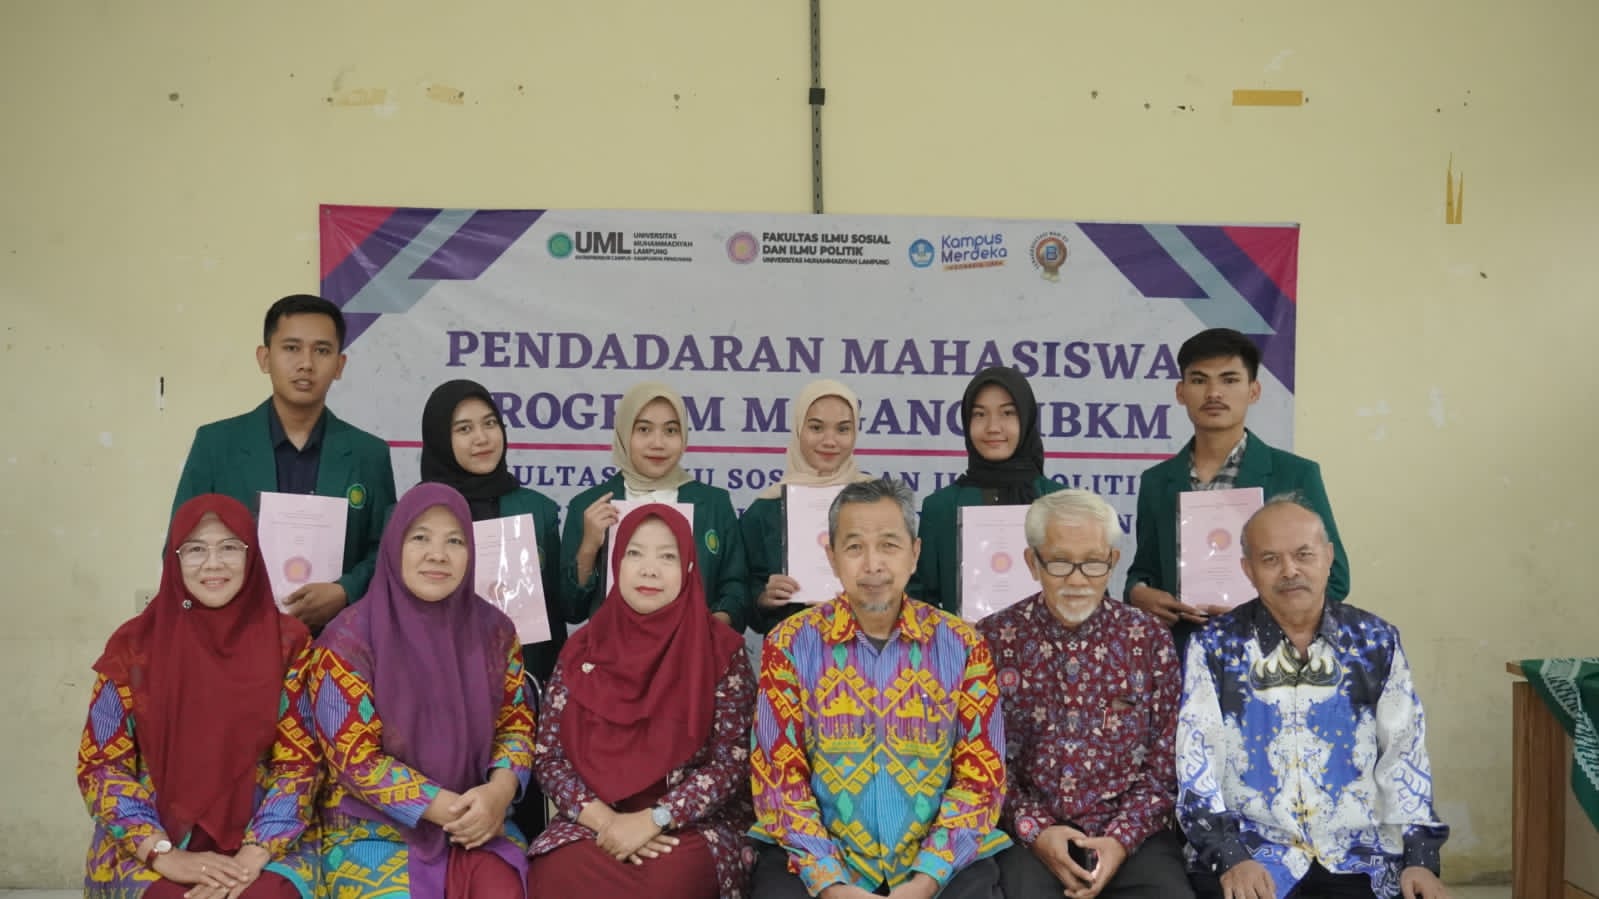 UM Lampung Gelar Pendadaran Pasca Mahasiswa Magang Berbasis MBKM Selama 3 Bulan di Radar Lampung